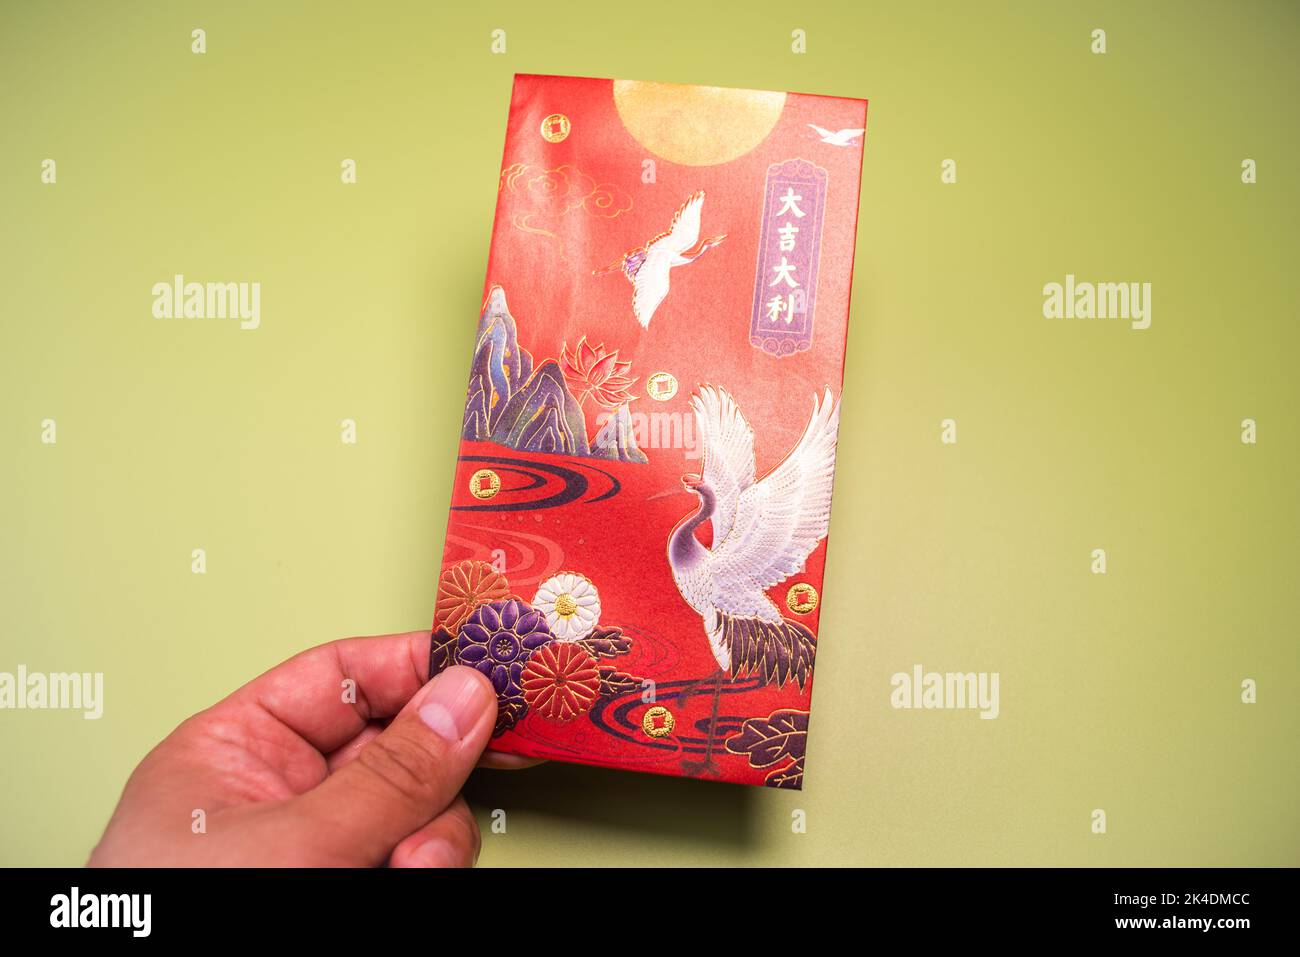 Chinesischer roter Umschlag, Ein roter Umschlag ist ein Geldgeschenk, das in eine verzierte rote Papiertasche gesteckt wird. Stockfoto